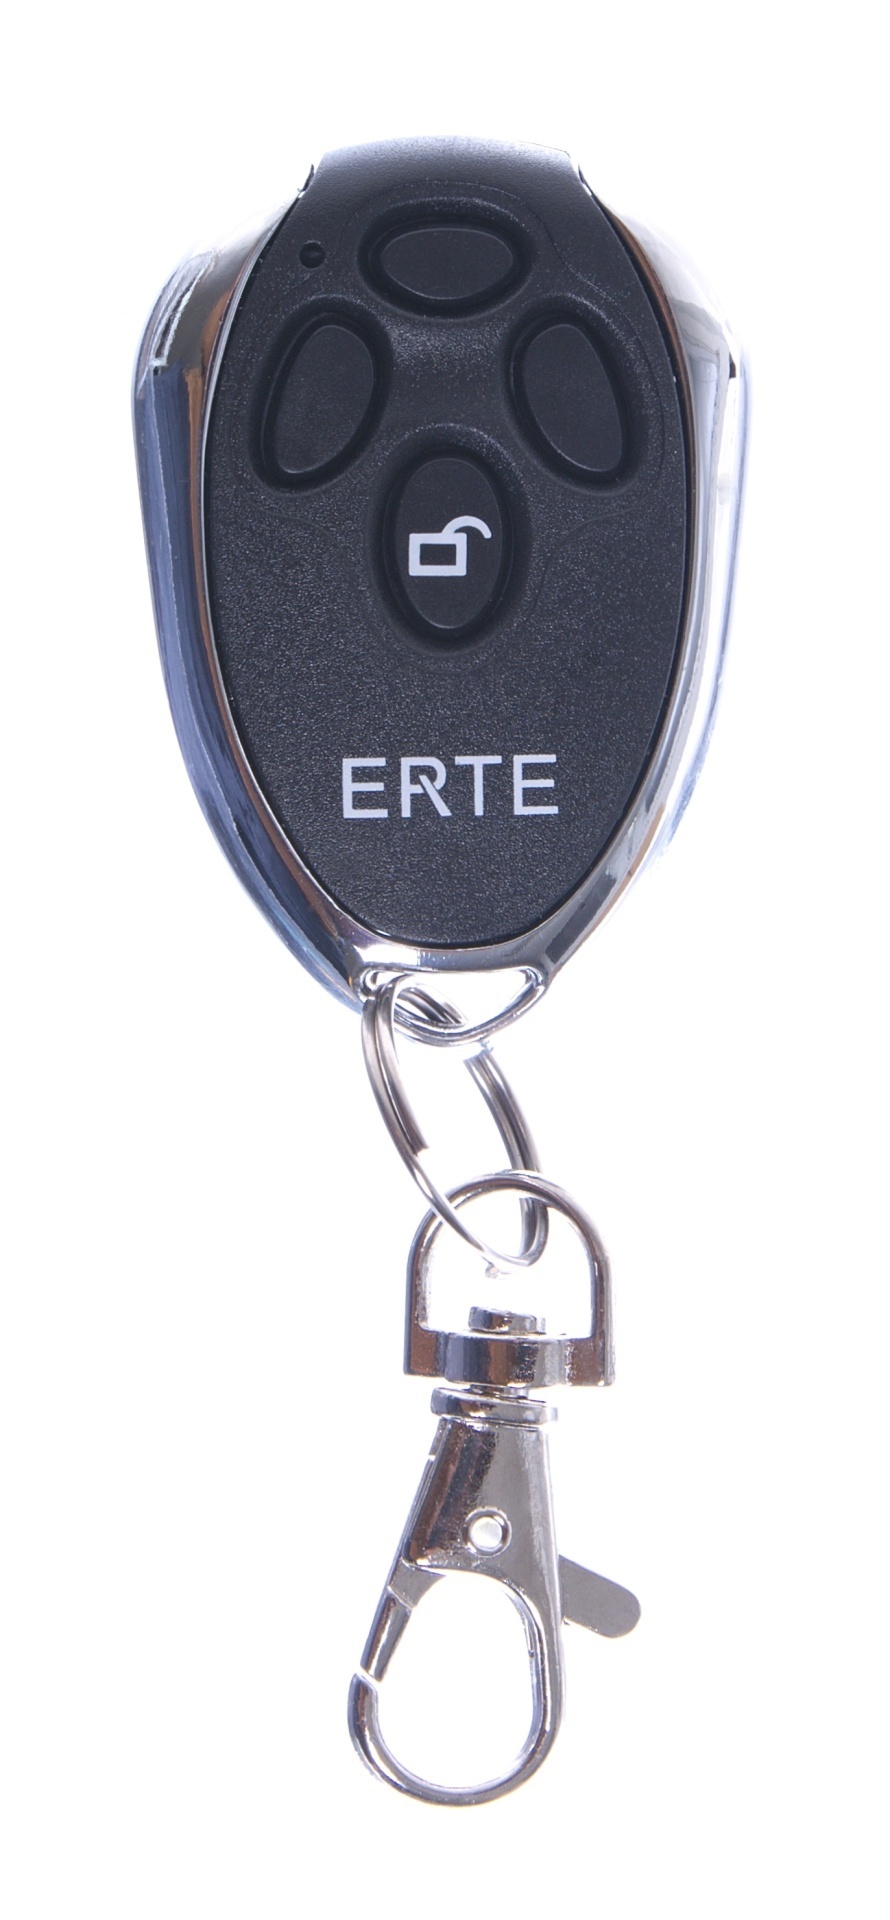 Dálkový ovládač Erte ER4, 3 kanálový ovládač na pohony ERTE, 433 MHz